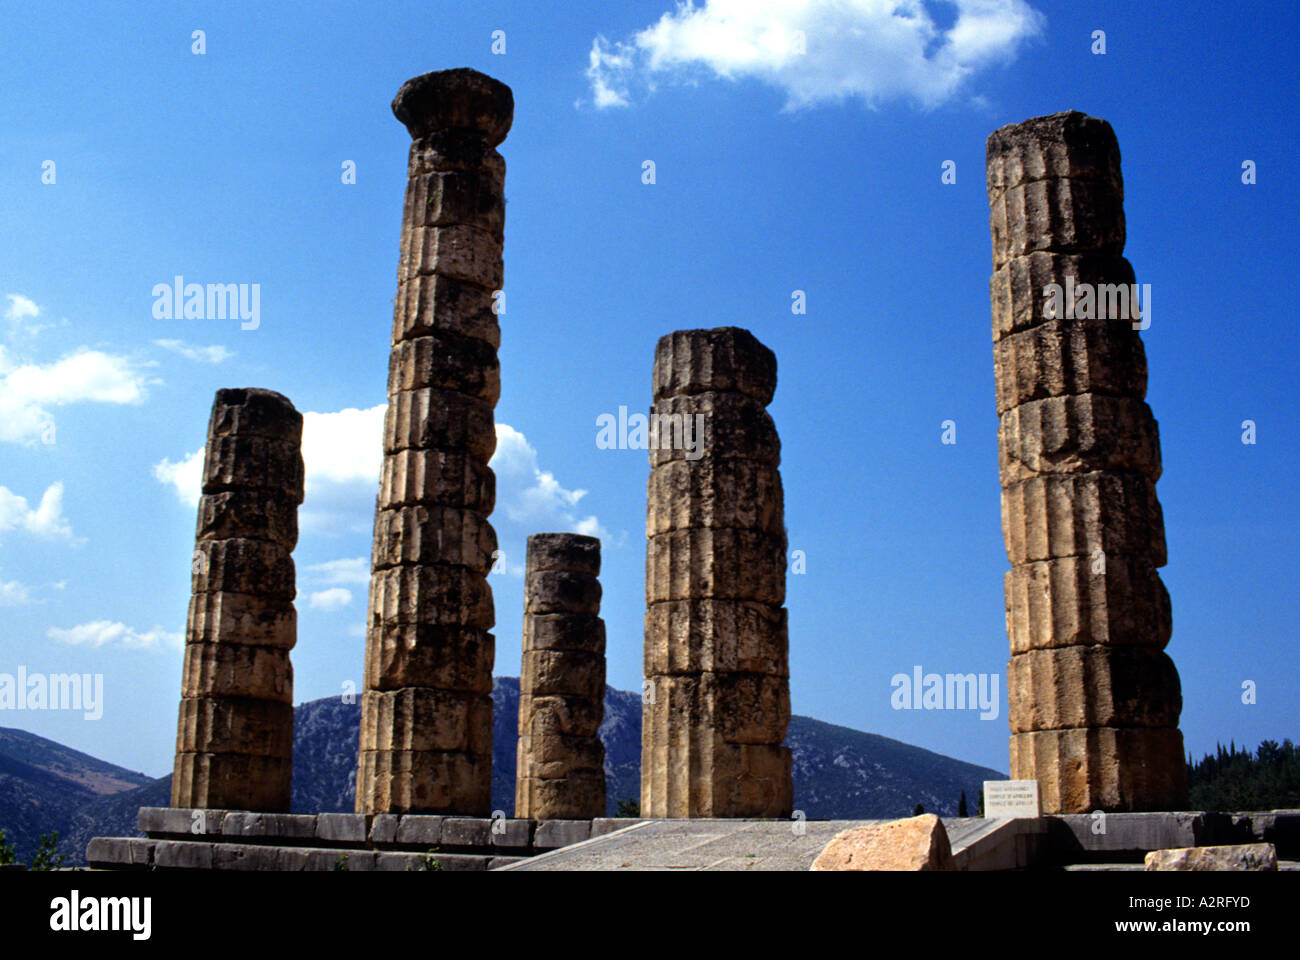 Temple of Apollo Delphi Central Greece Stock Photo